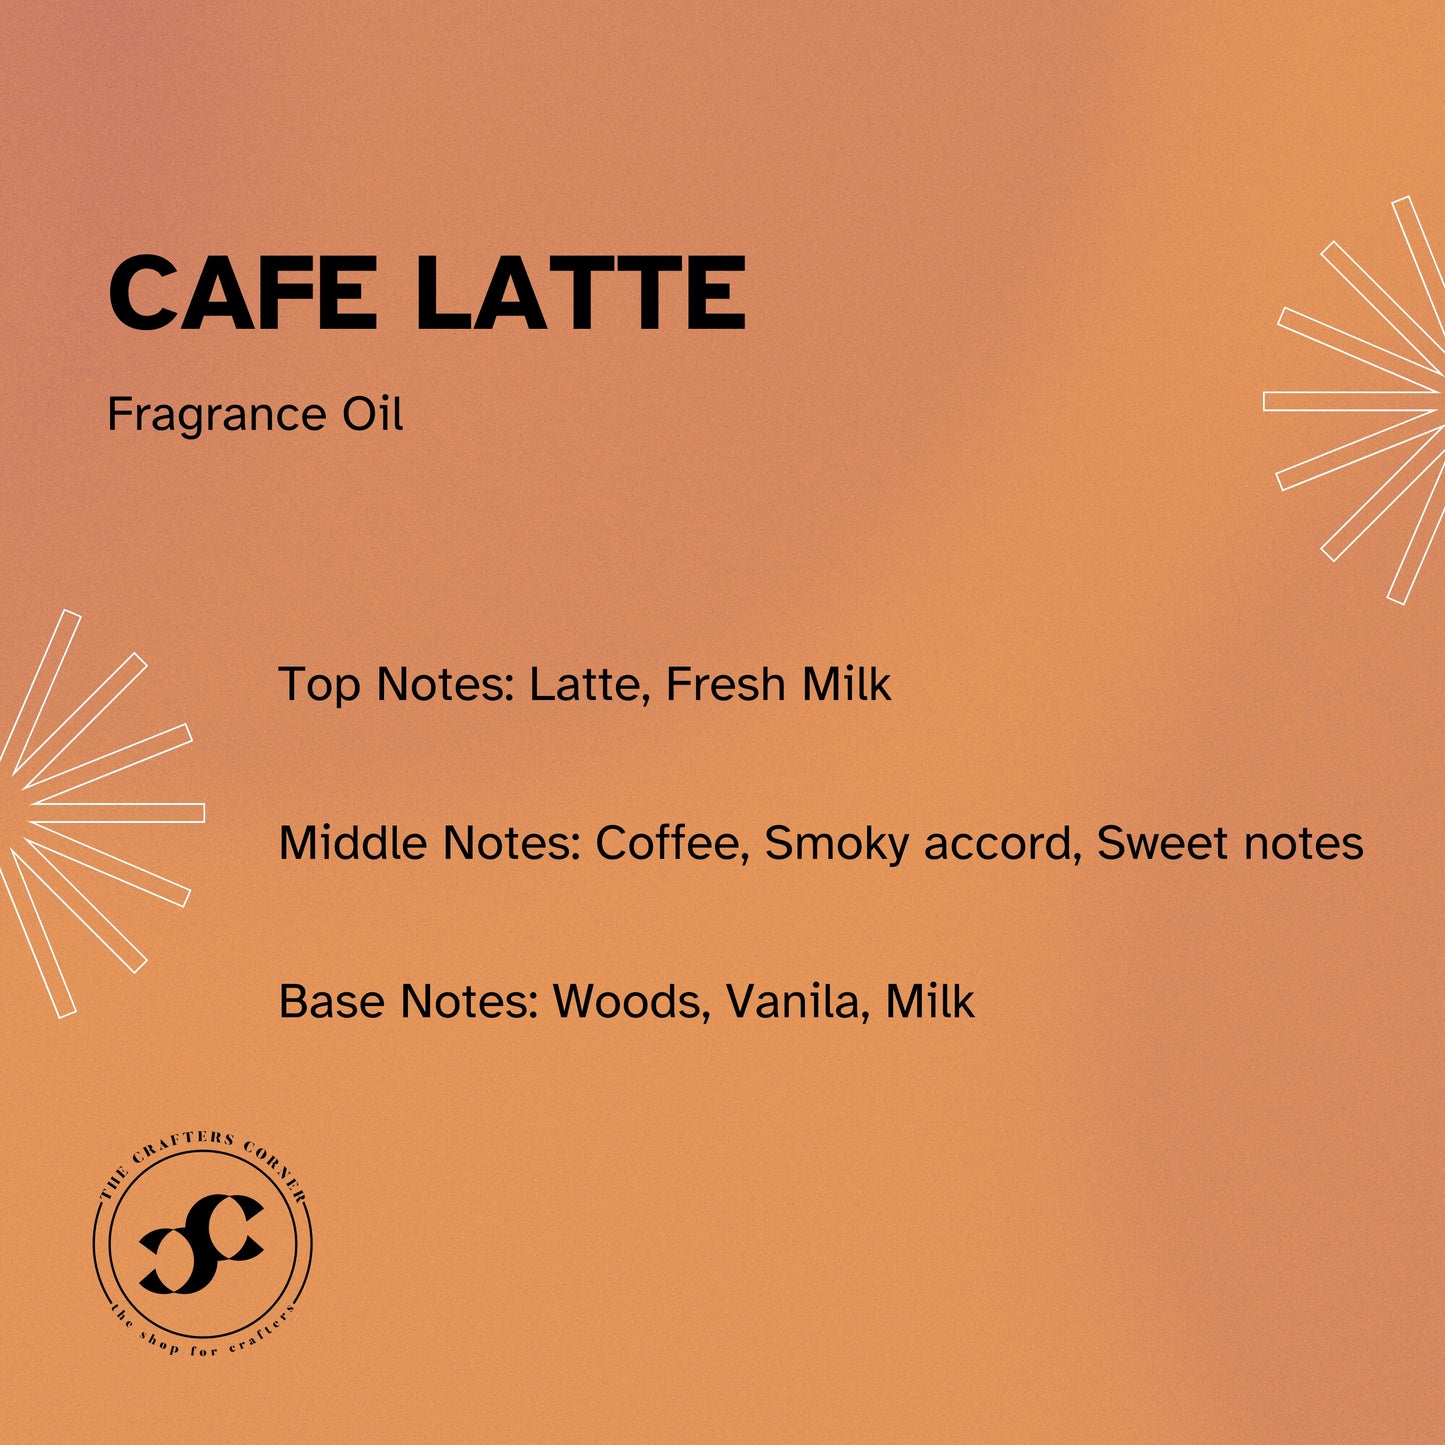 Cafe Latte Fragrance Oil